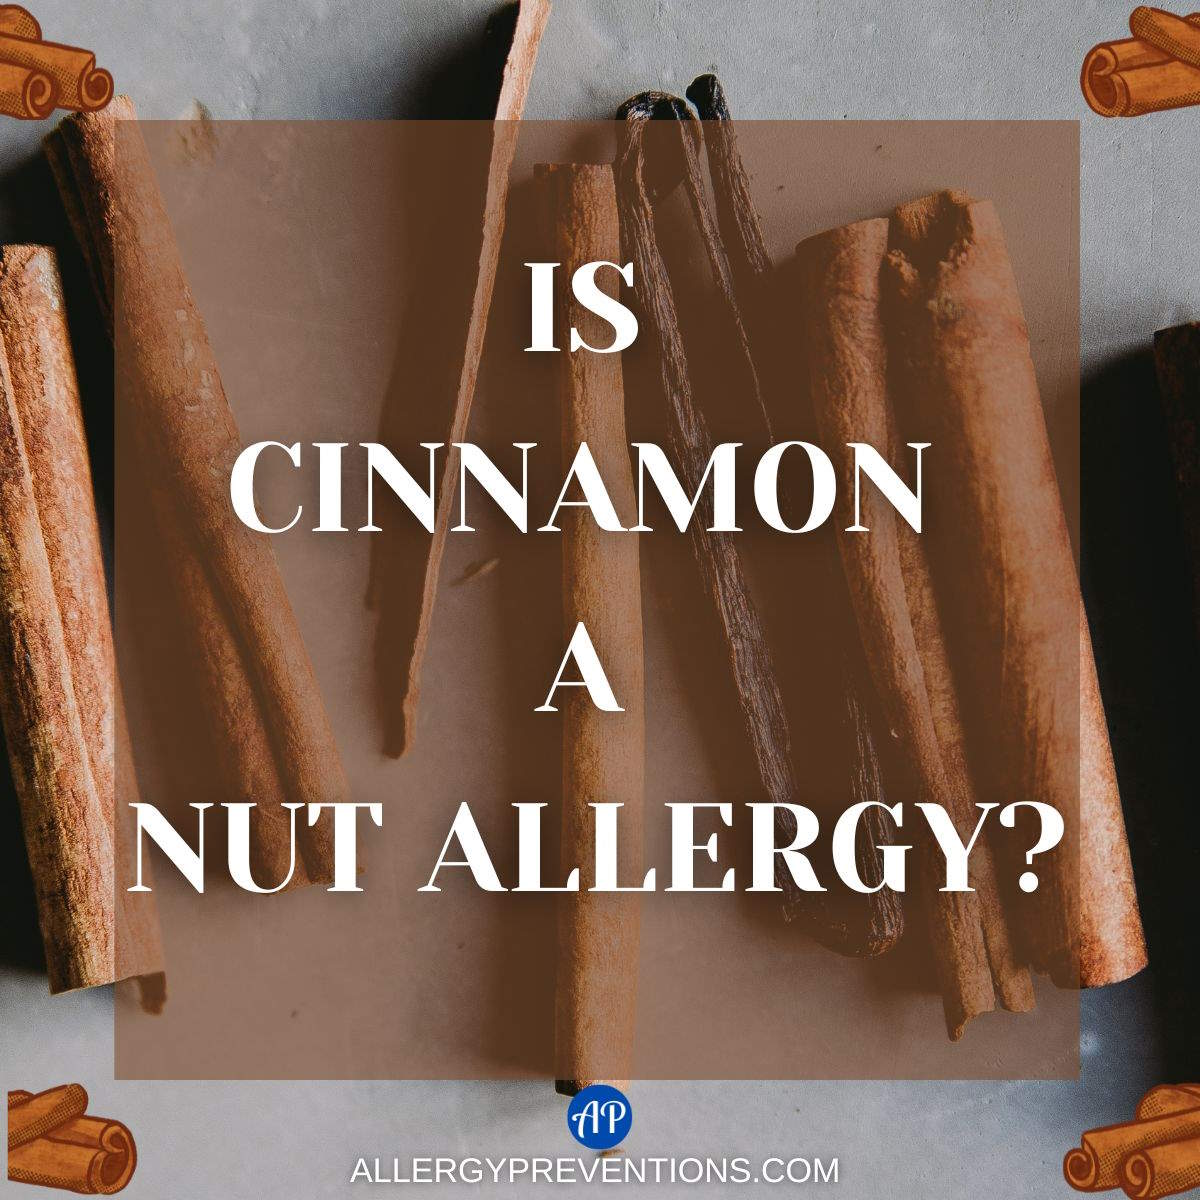 Is cinnamon a nut allergy?